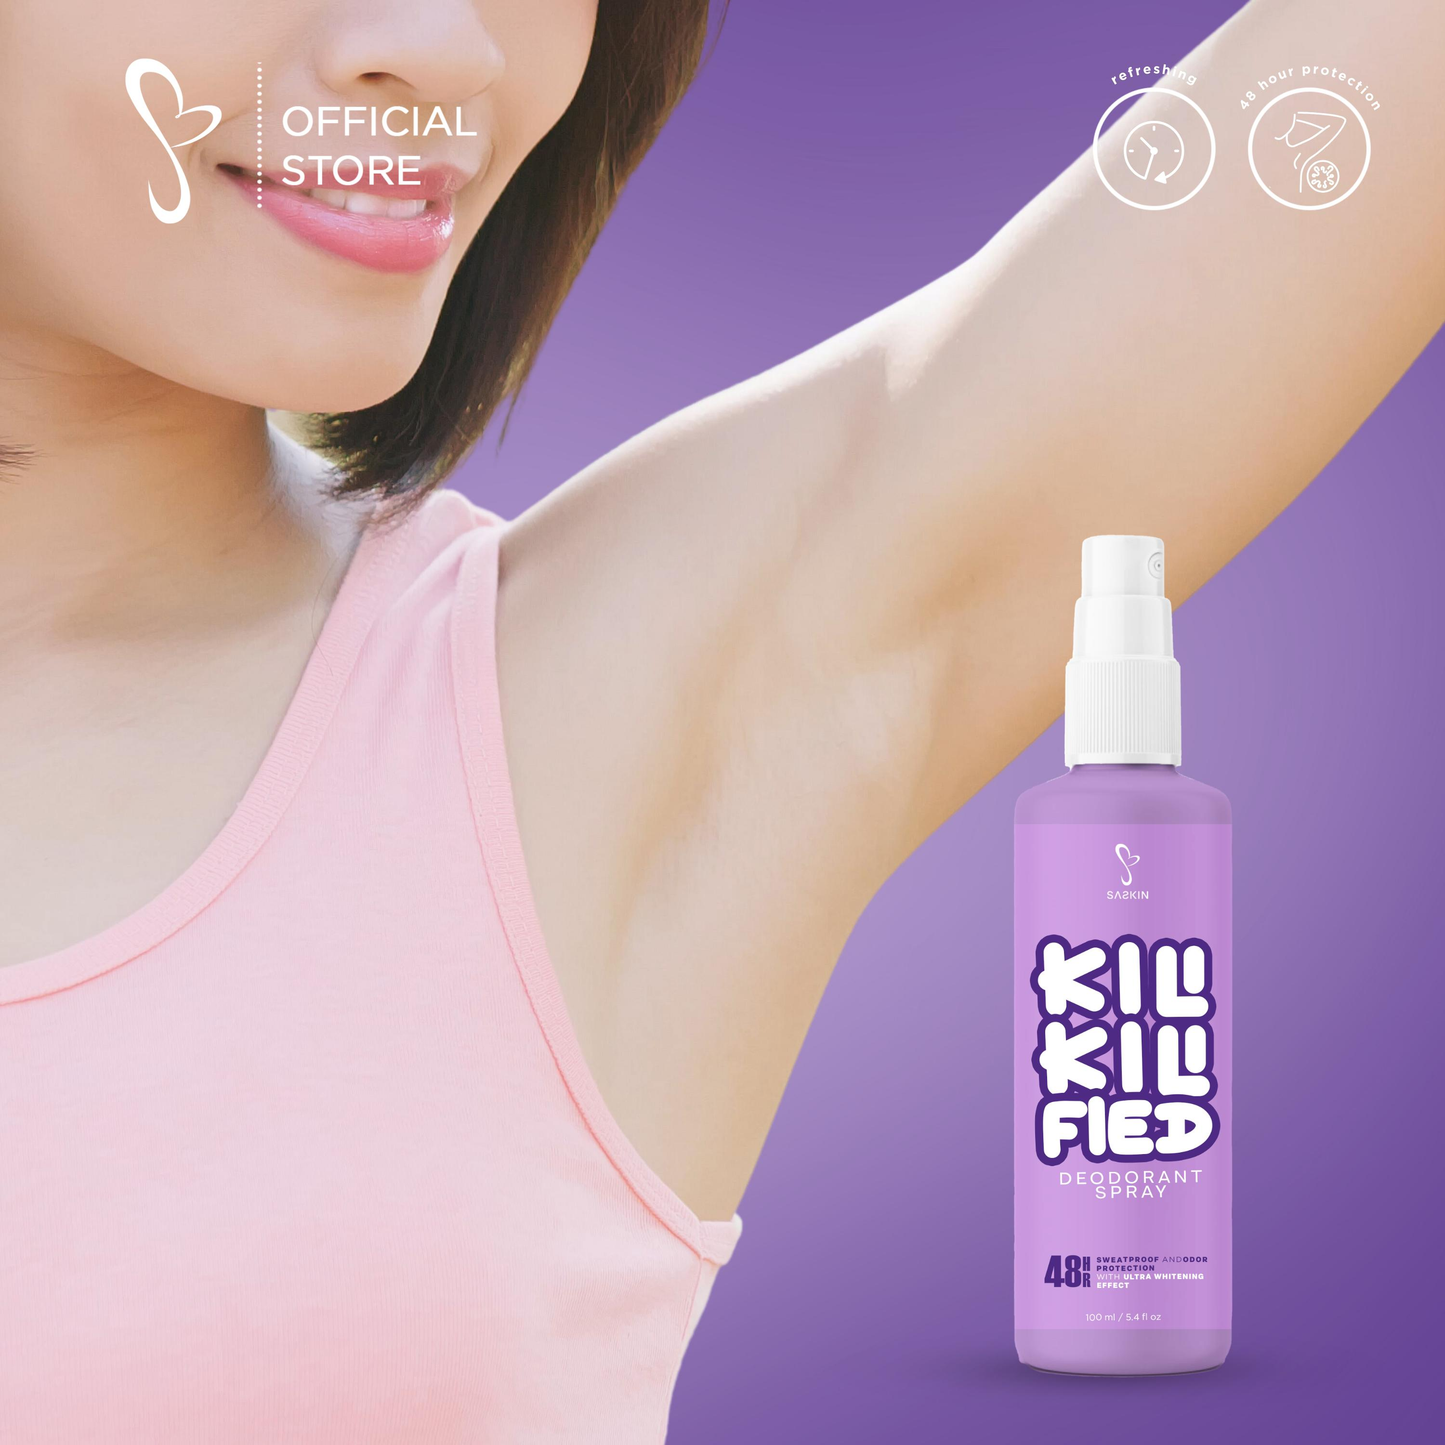 Kili Kili Fied Deo Spray 60ml By SASKIN